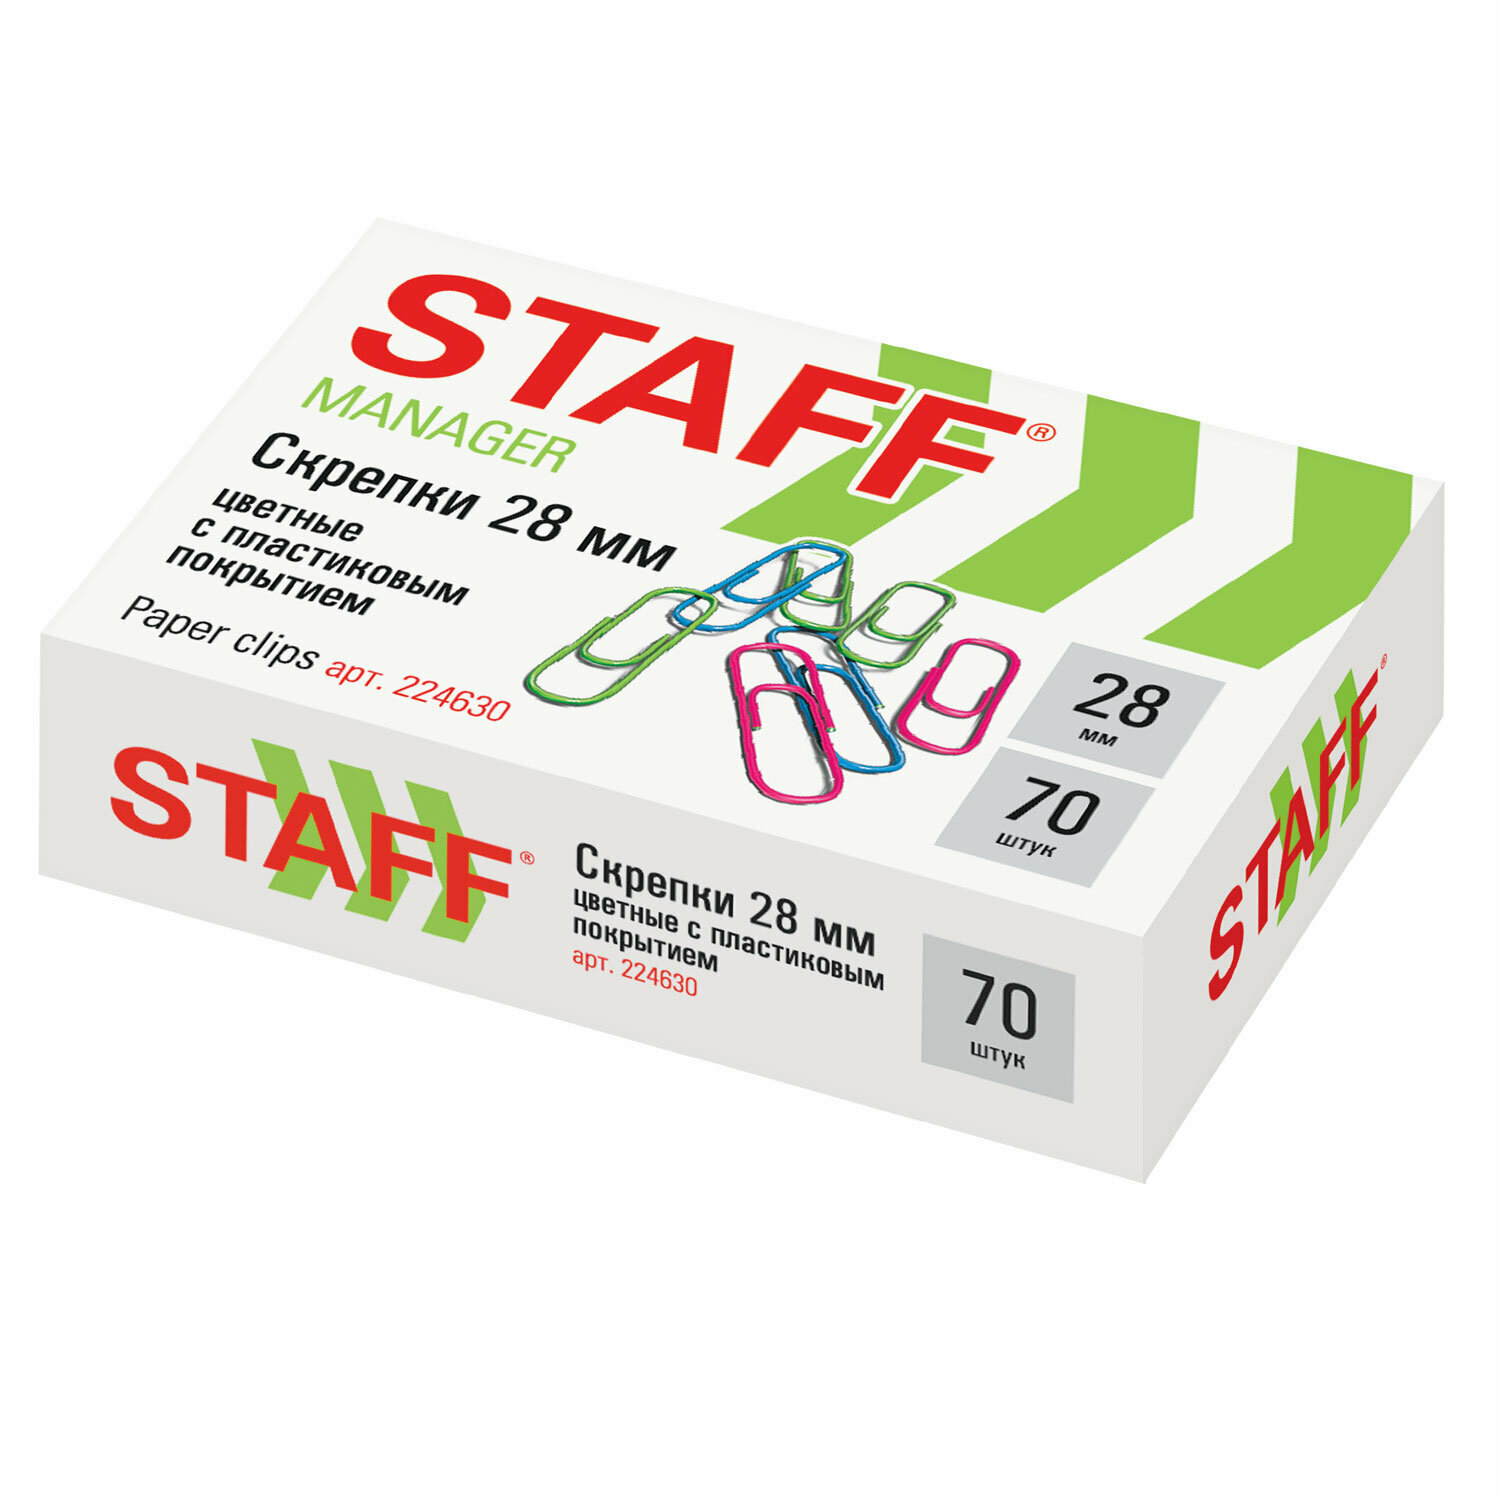 Скрепки STAFF Manager, 28 мм, цветные, 70 шт, в картонной коробке, россия, 224630, - Комплект 15 шт.(компл.)